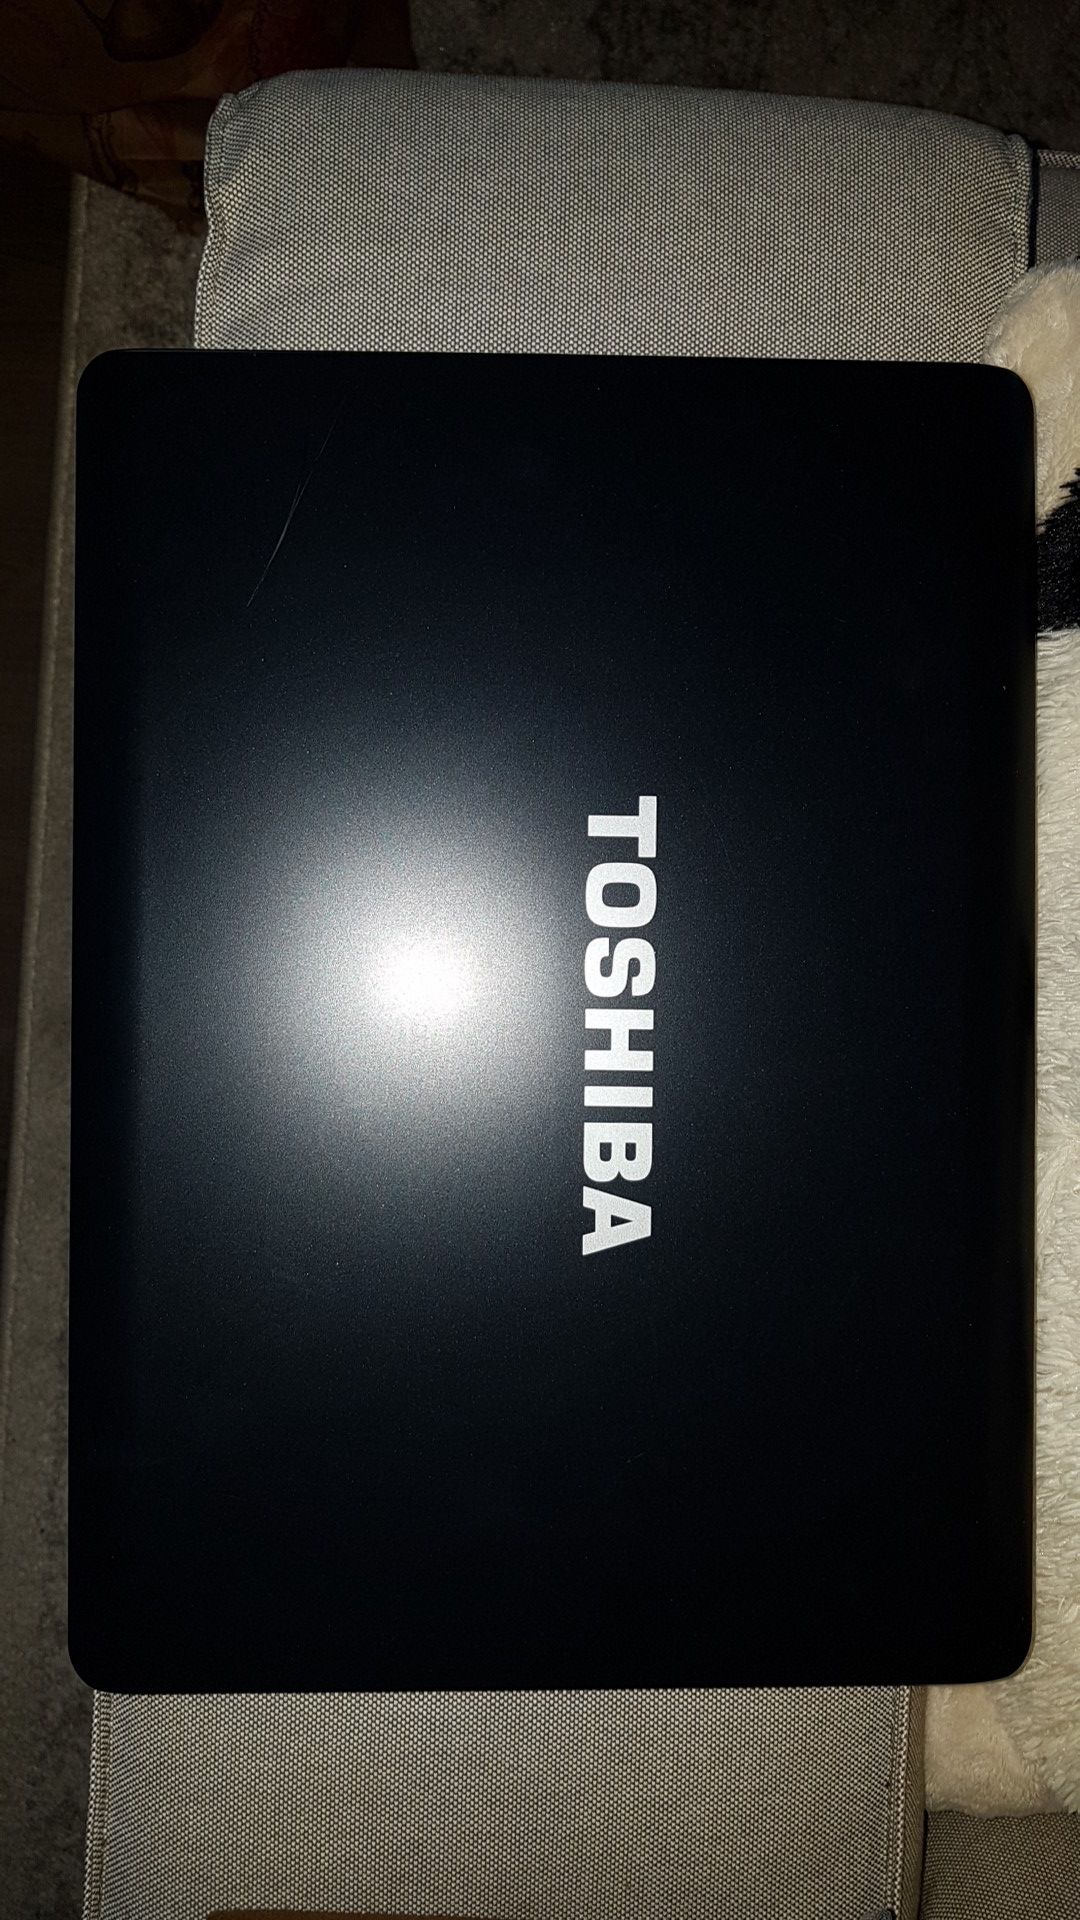 Toshiba Satellite A215 Laptop